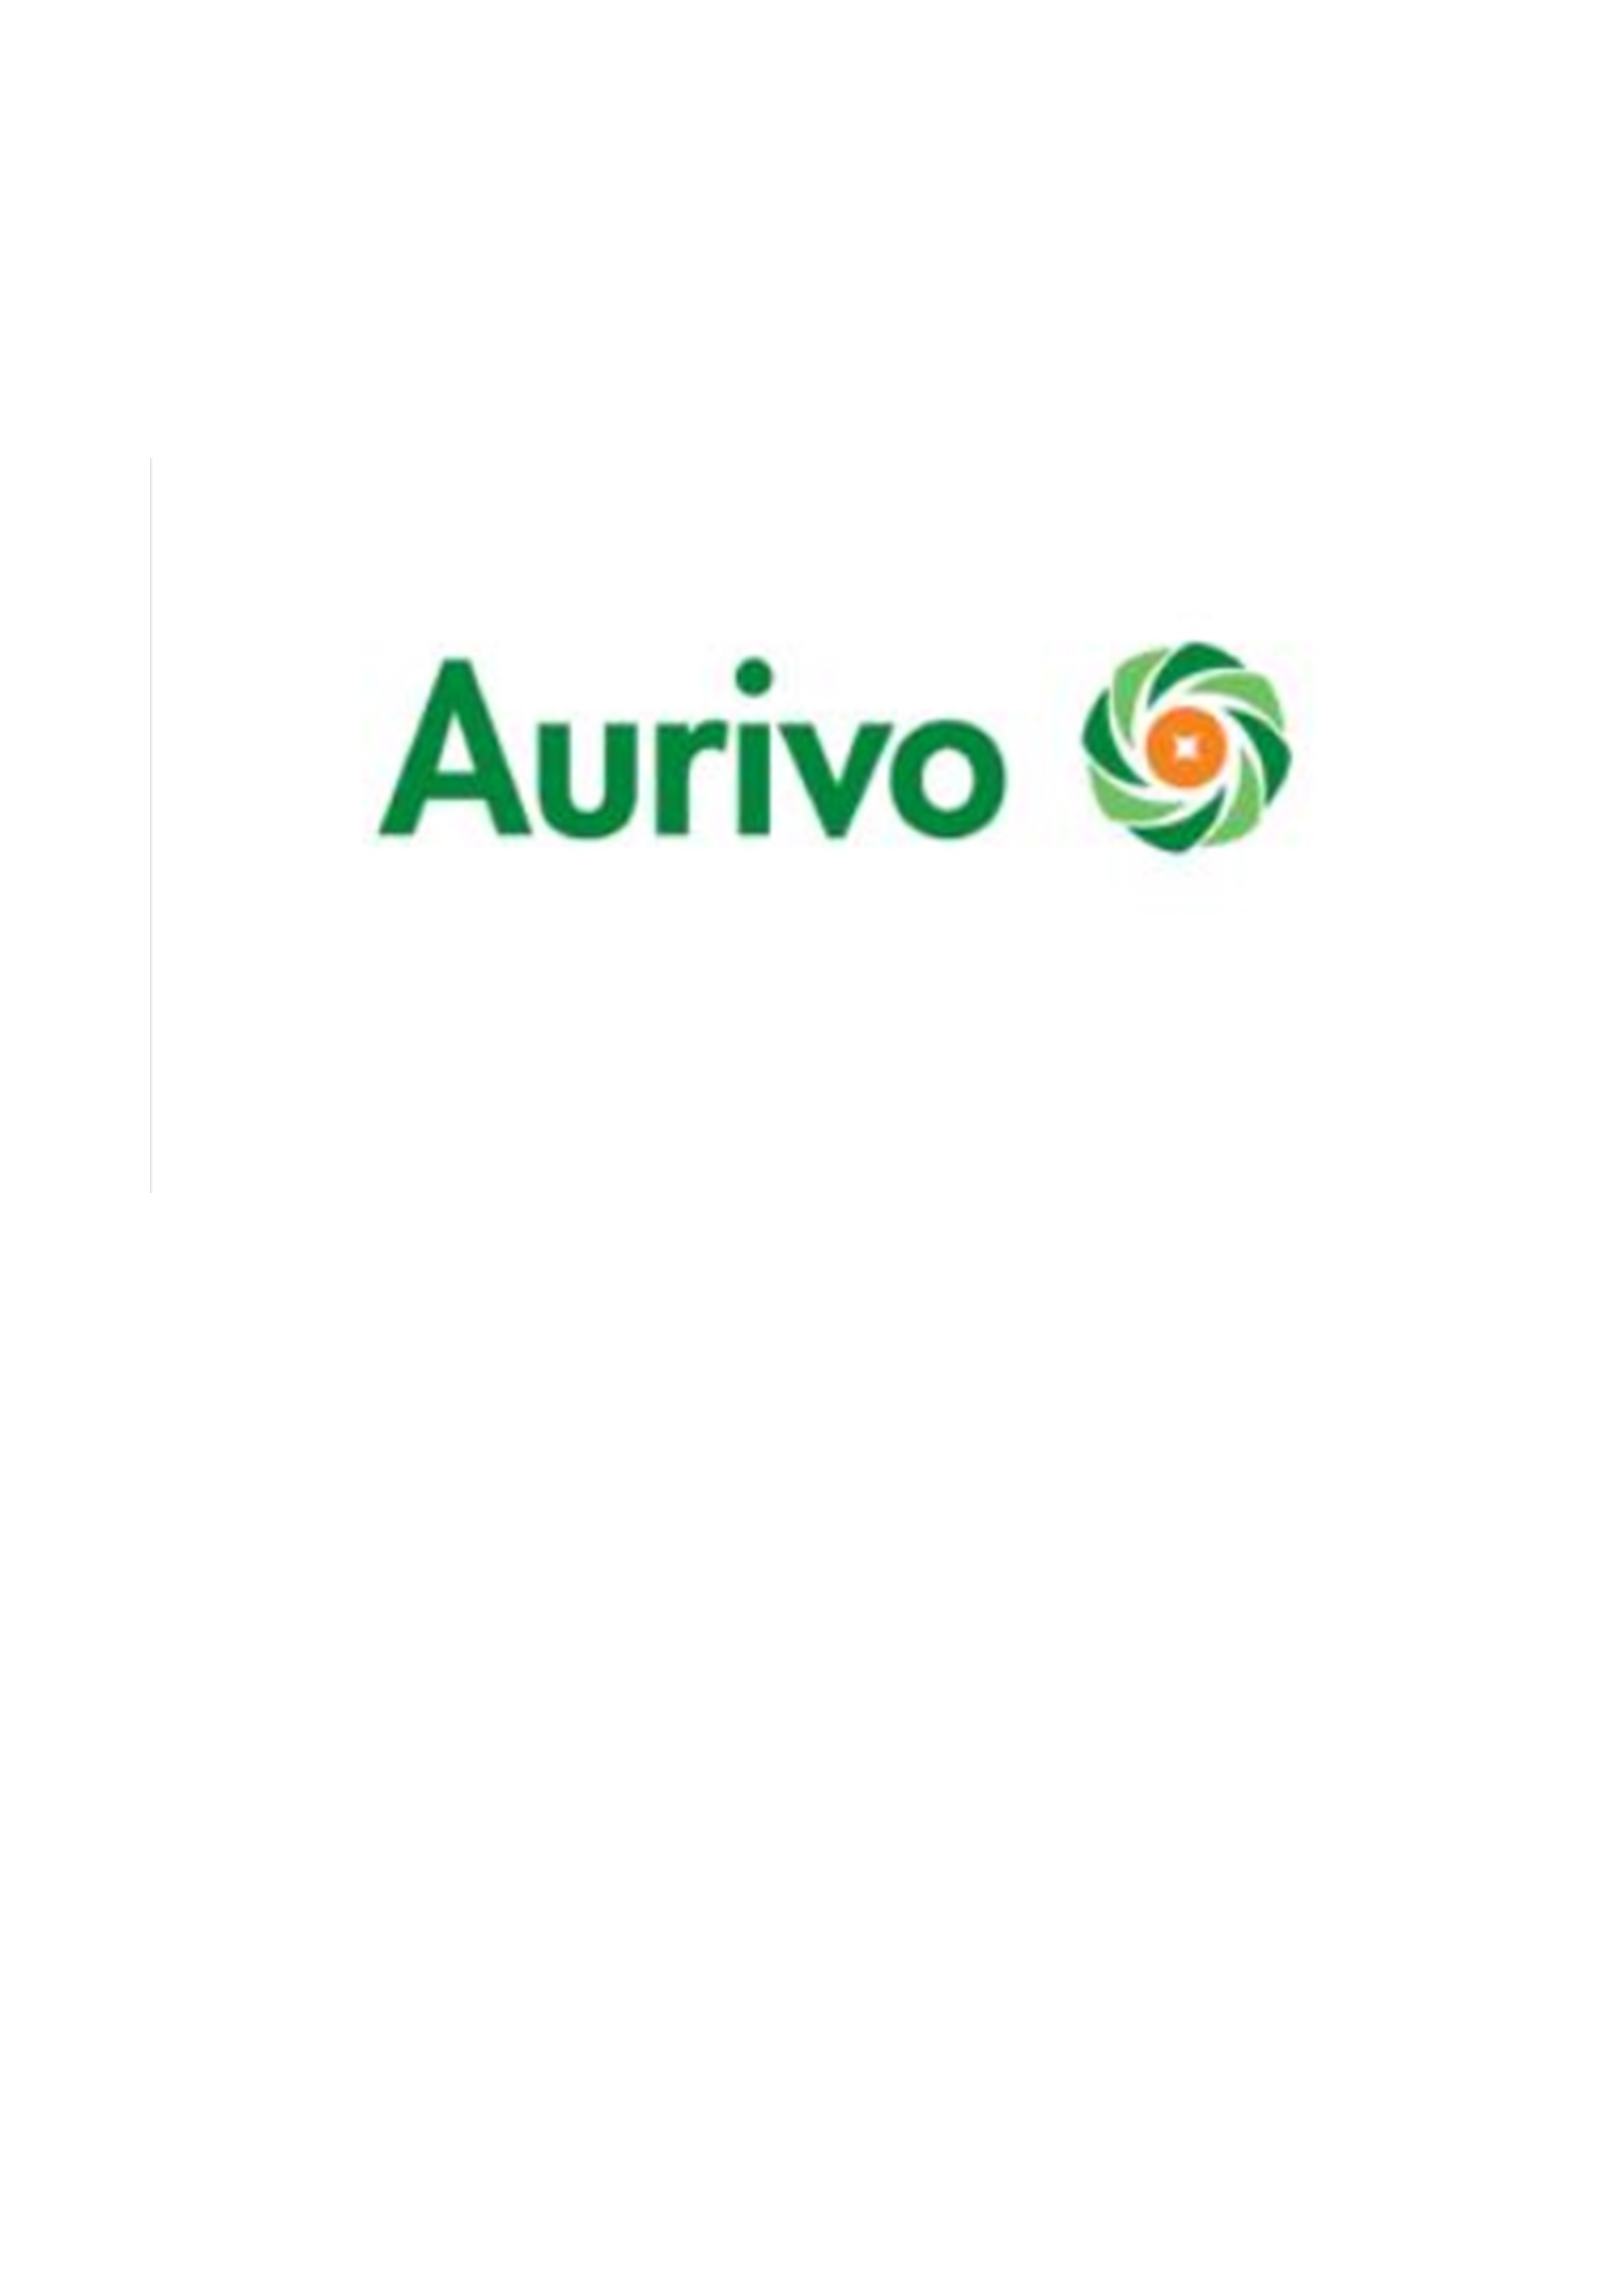 Aurivo Consumer Foods